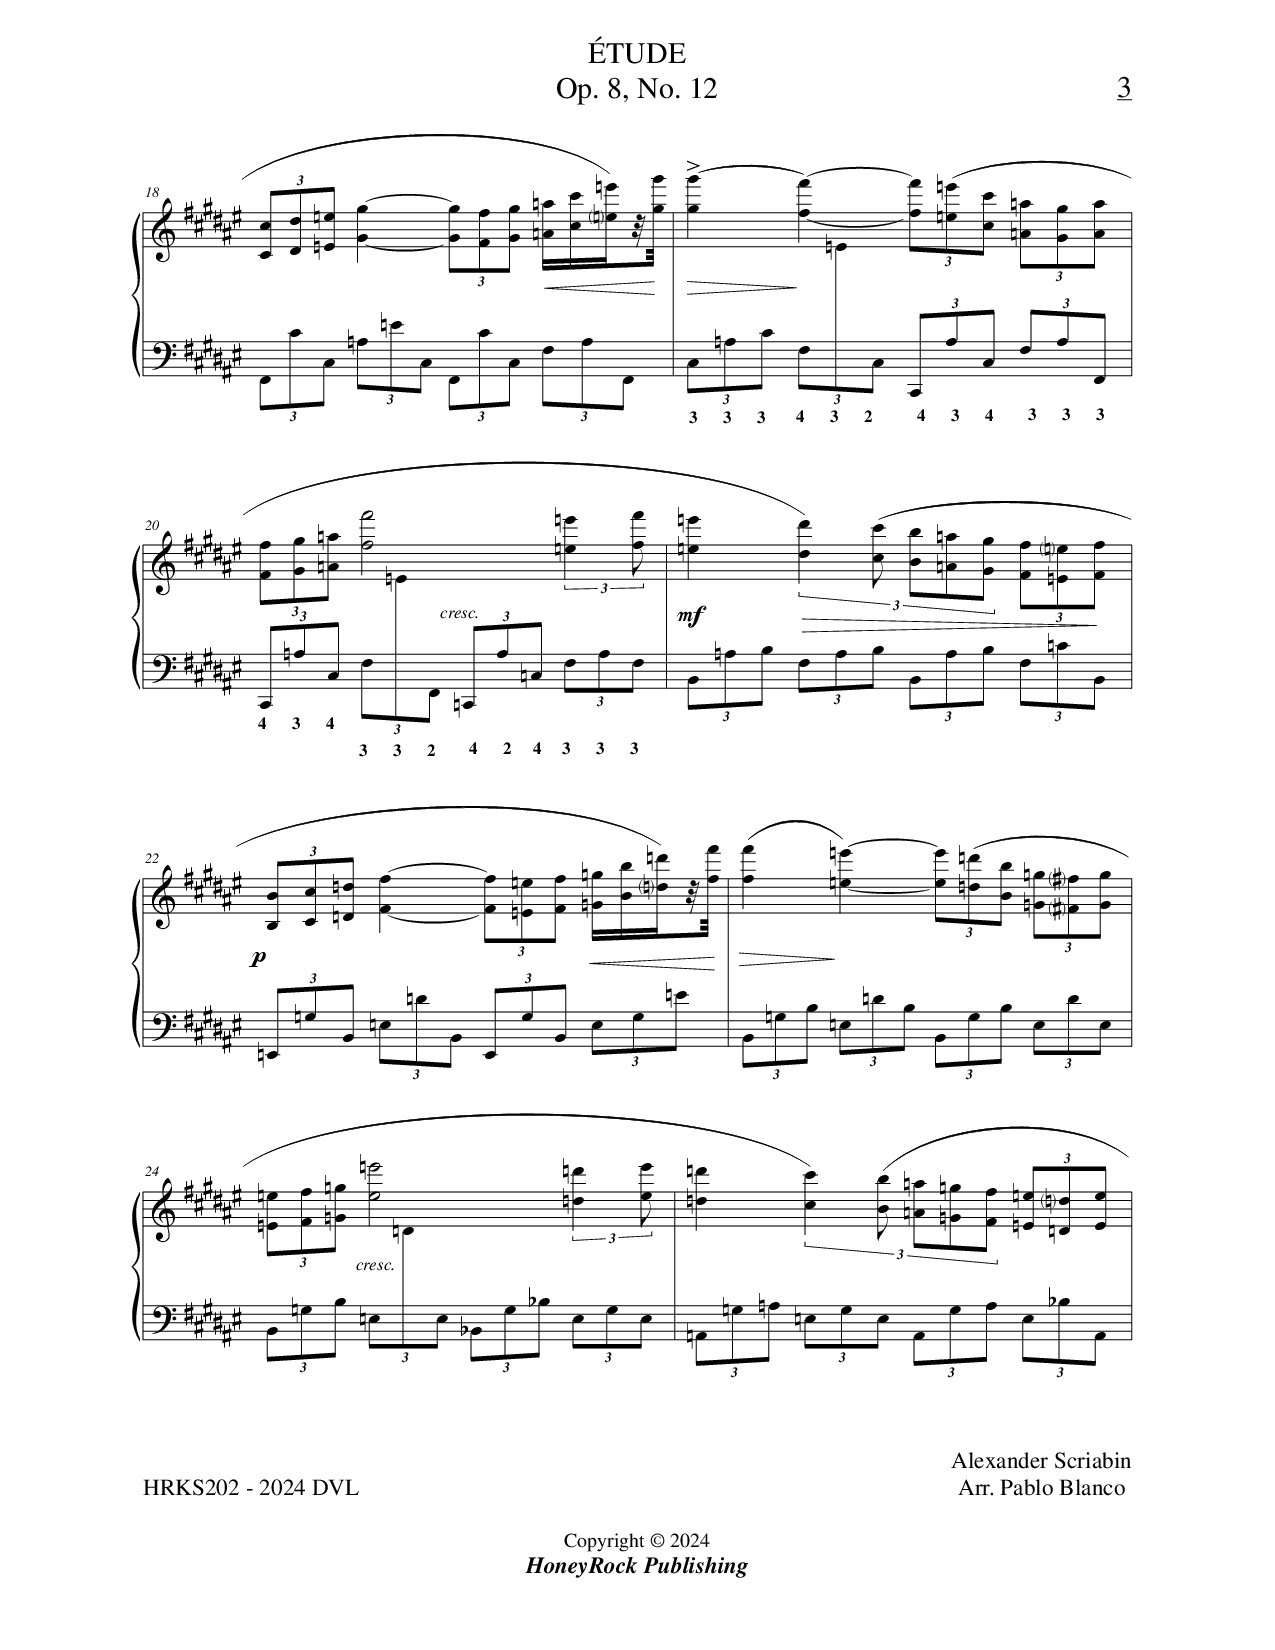 Etude OP. 8, No.12 Alexander Scriabin Arr. for Solo Marimba by Pablo Blanco Cordero